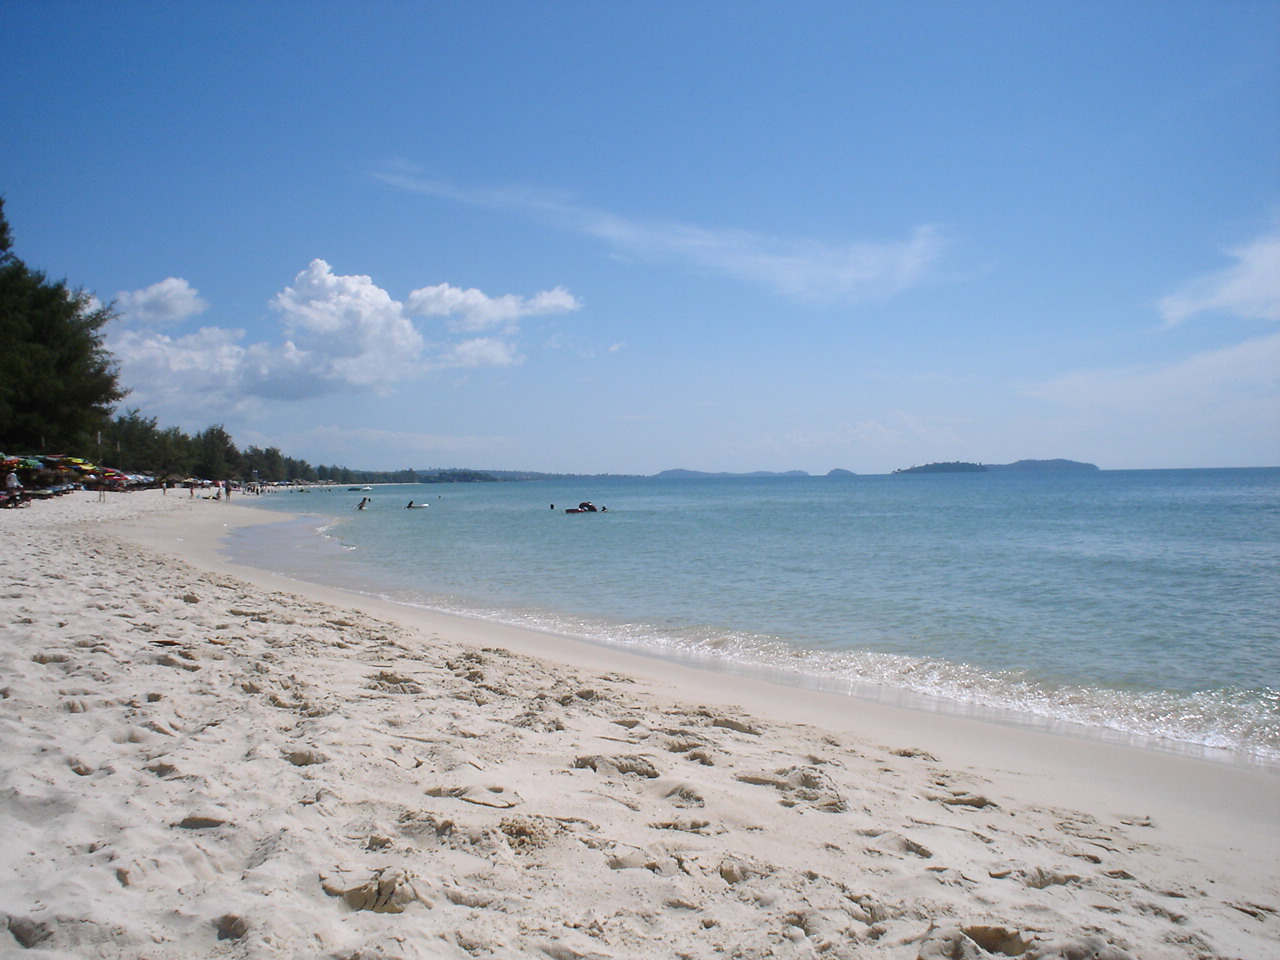 Sihanoukville beach